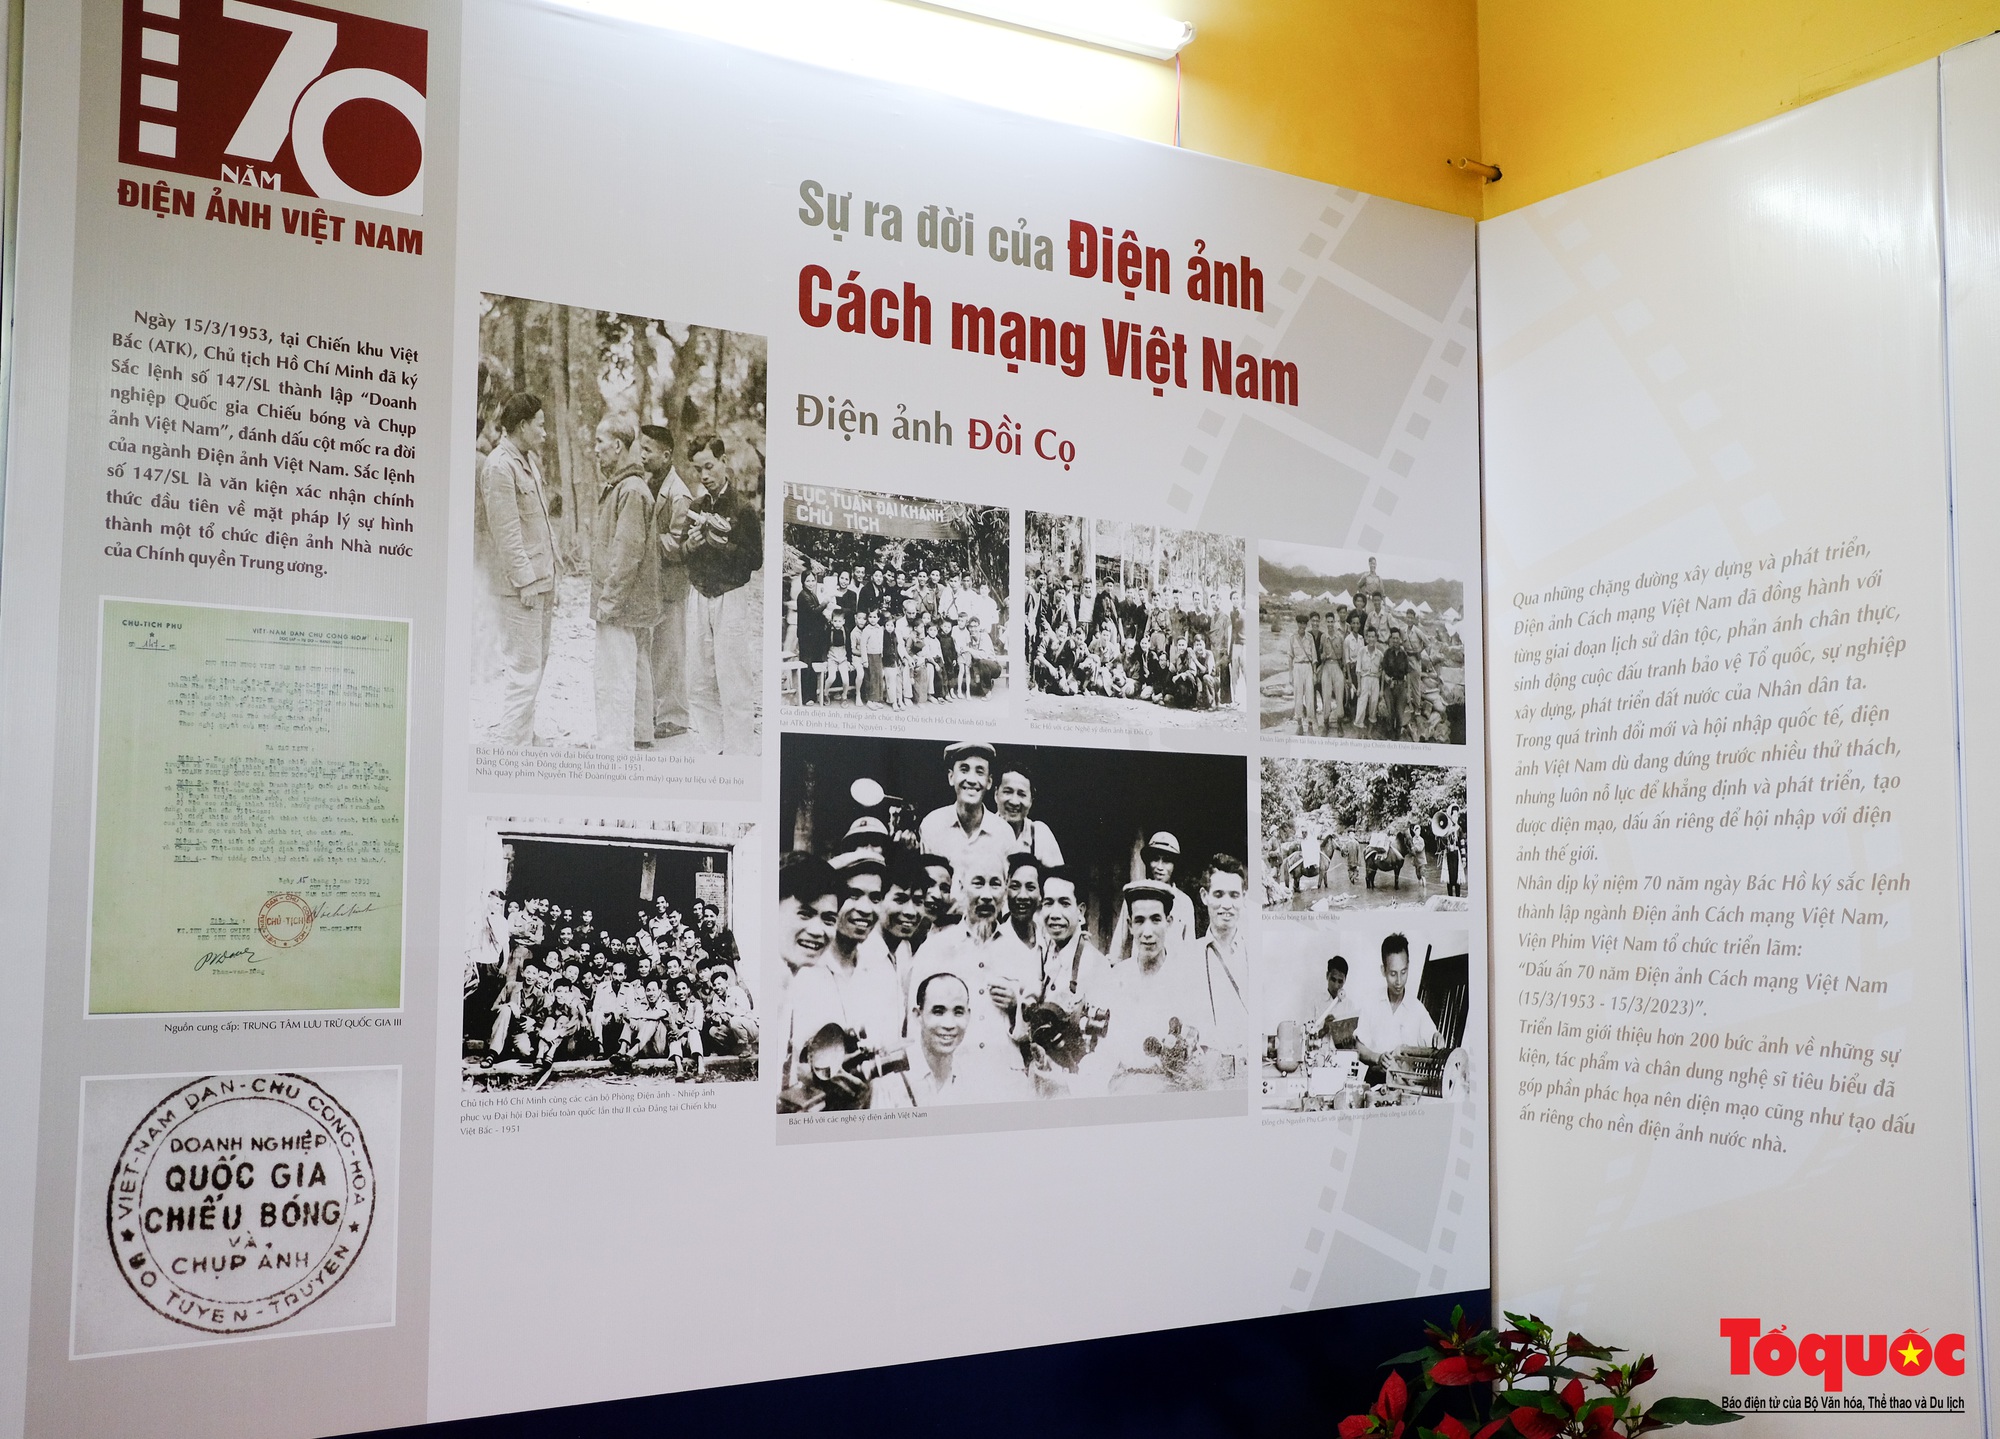 Hơn 200 tư liệu, hiện vật quý được trưng bày kỷ niệm 70 năm Điện ảnh Cách mạng Việt Nam - Ảnh 1.